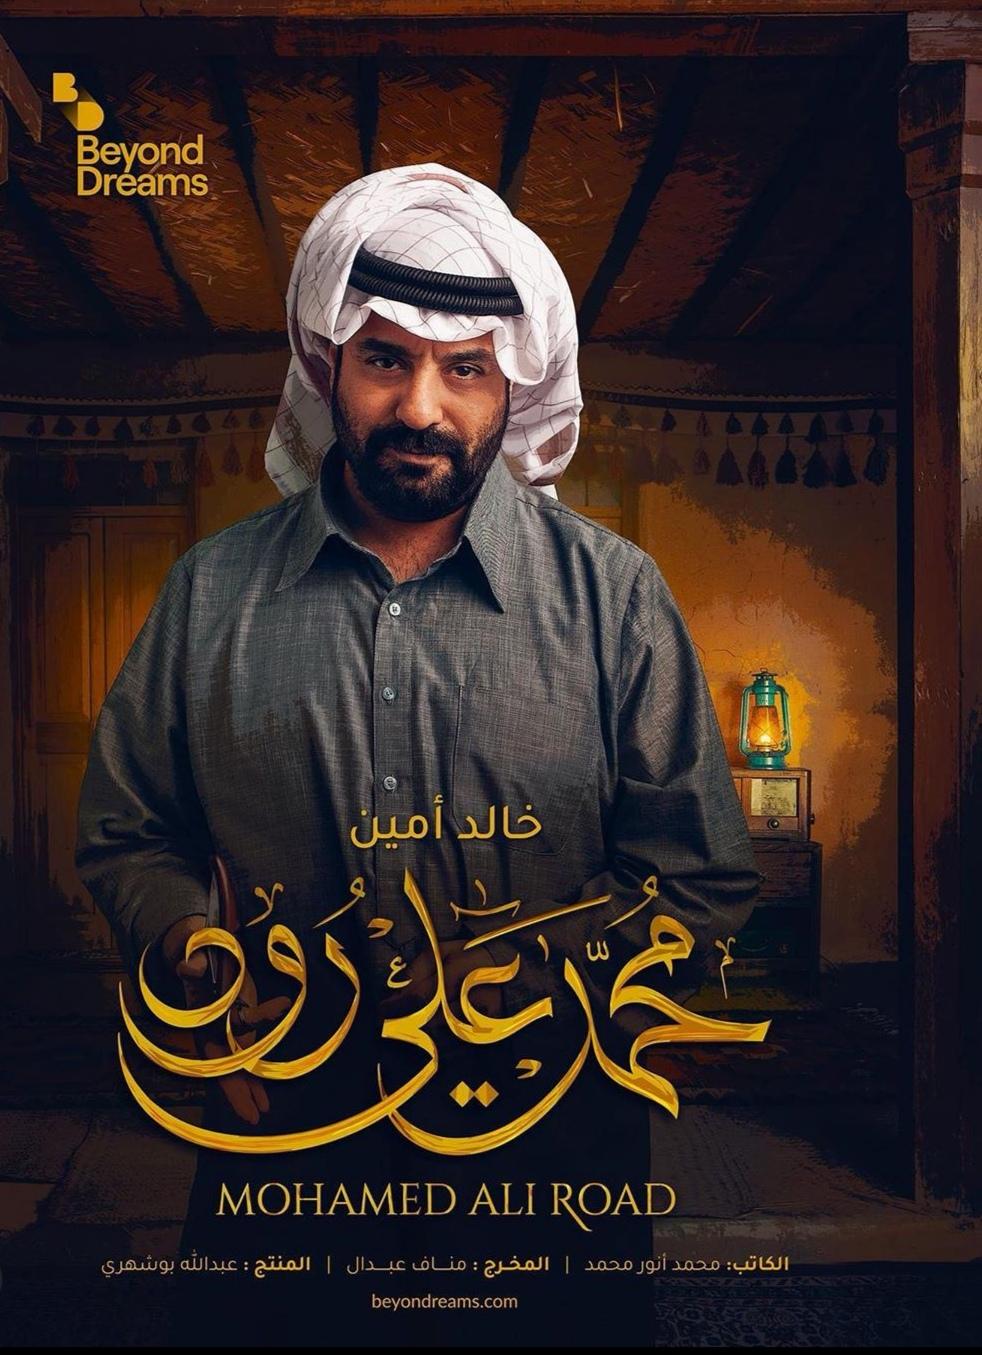 بوستر مسلسل "محمد علي رود"خالد أمين- انستغرام 